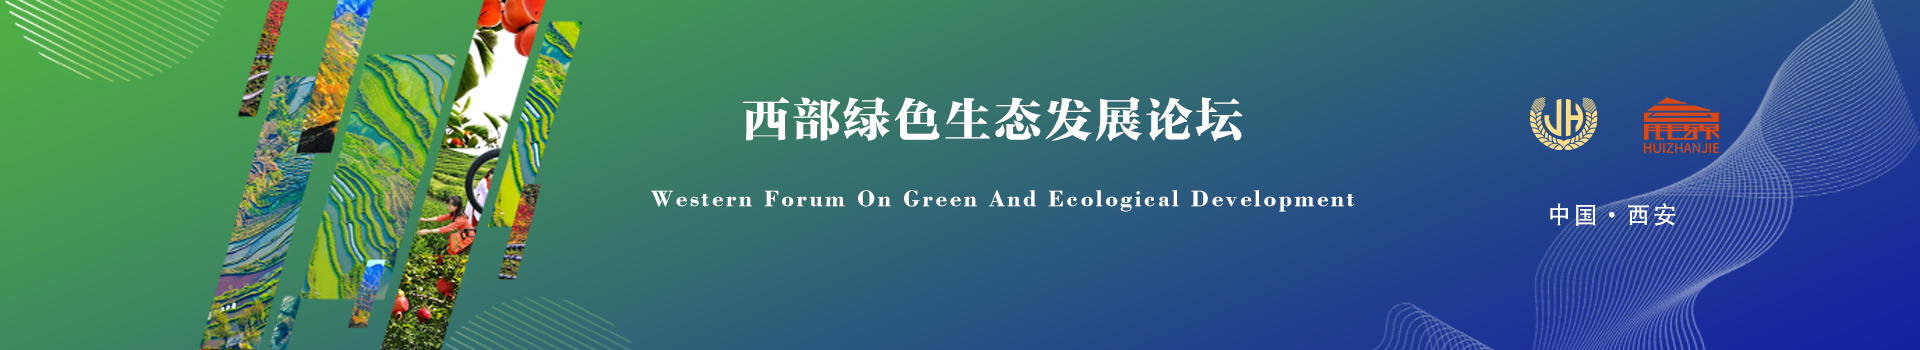 西部绿色生态发展论坛